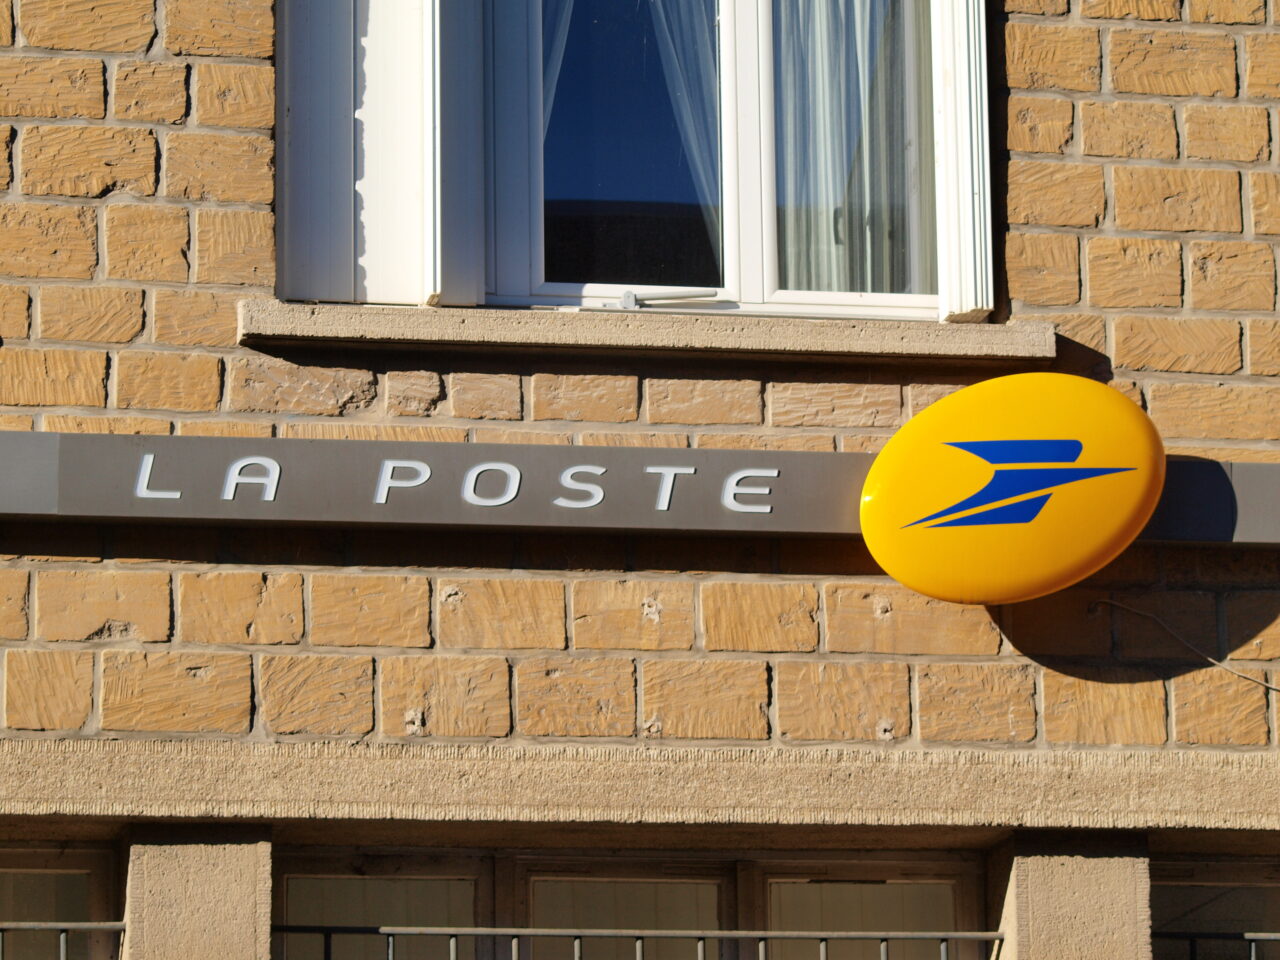 Zdjęcie ściany budynku z oknem oraz znakiem poczty "LA POSTE" wraz z okrągłym, żółtym logo.